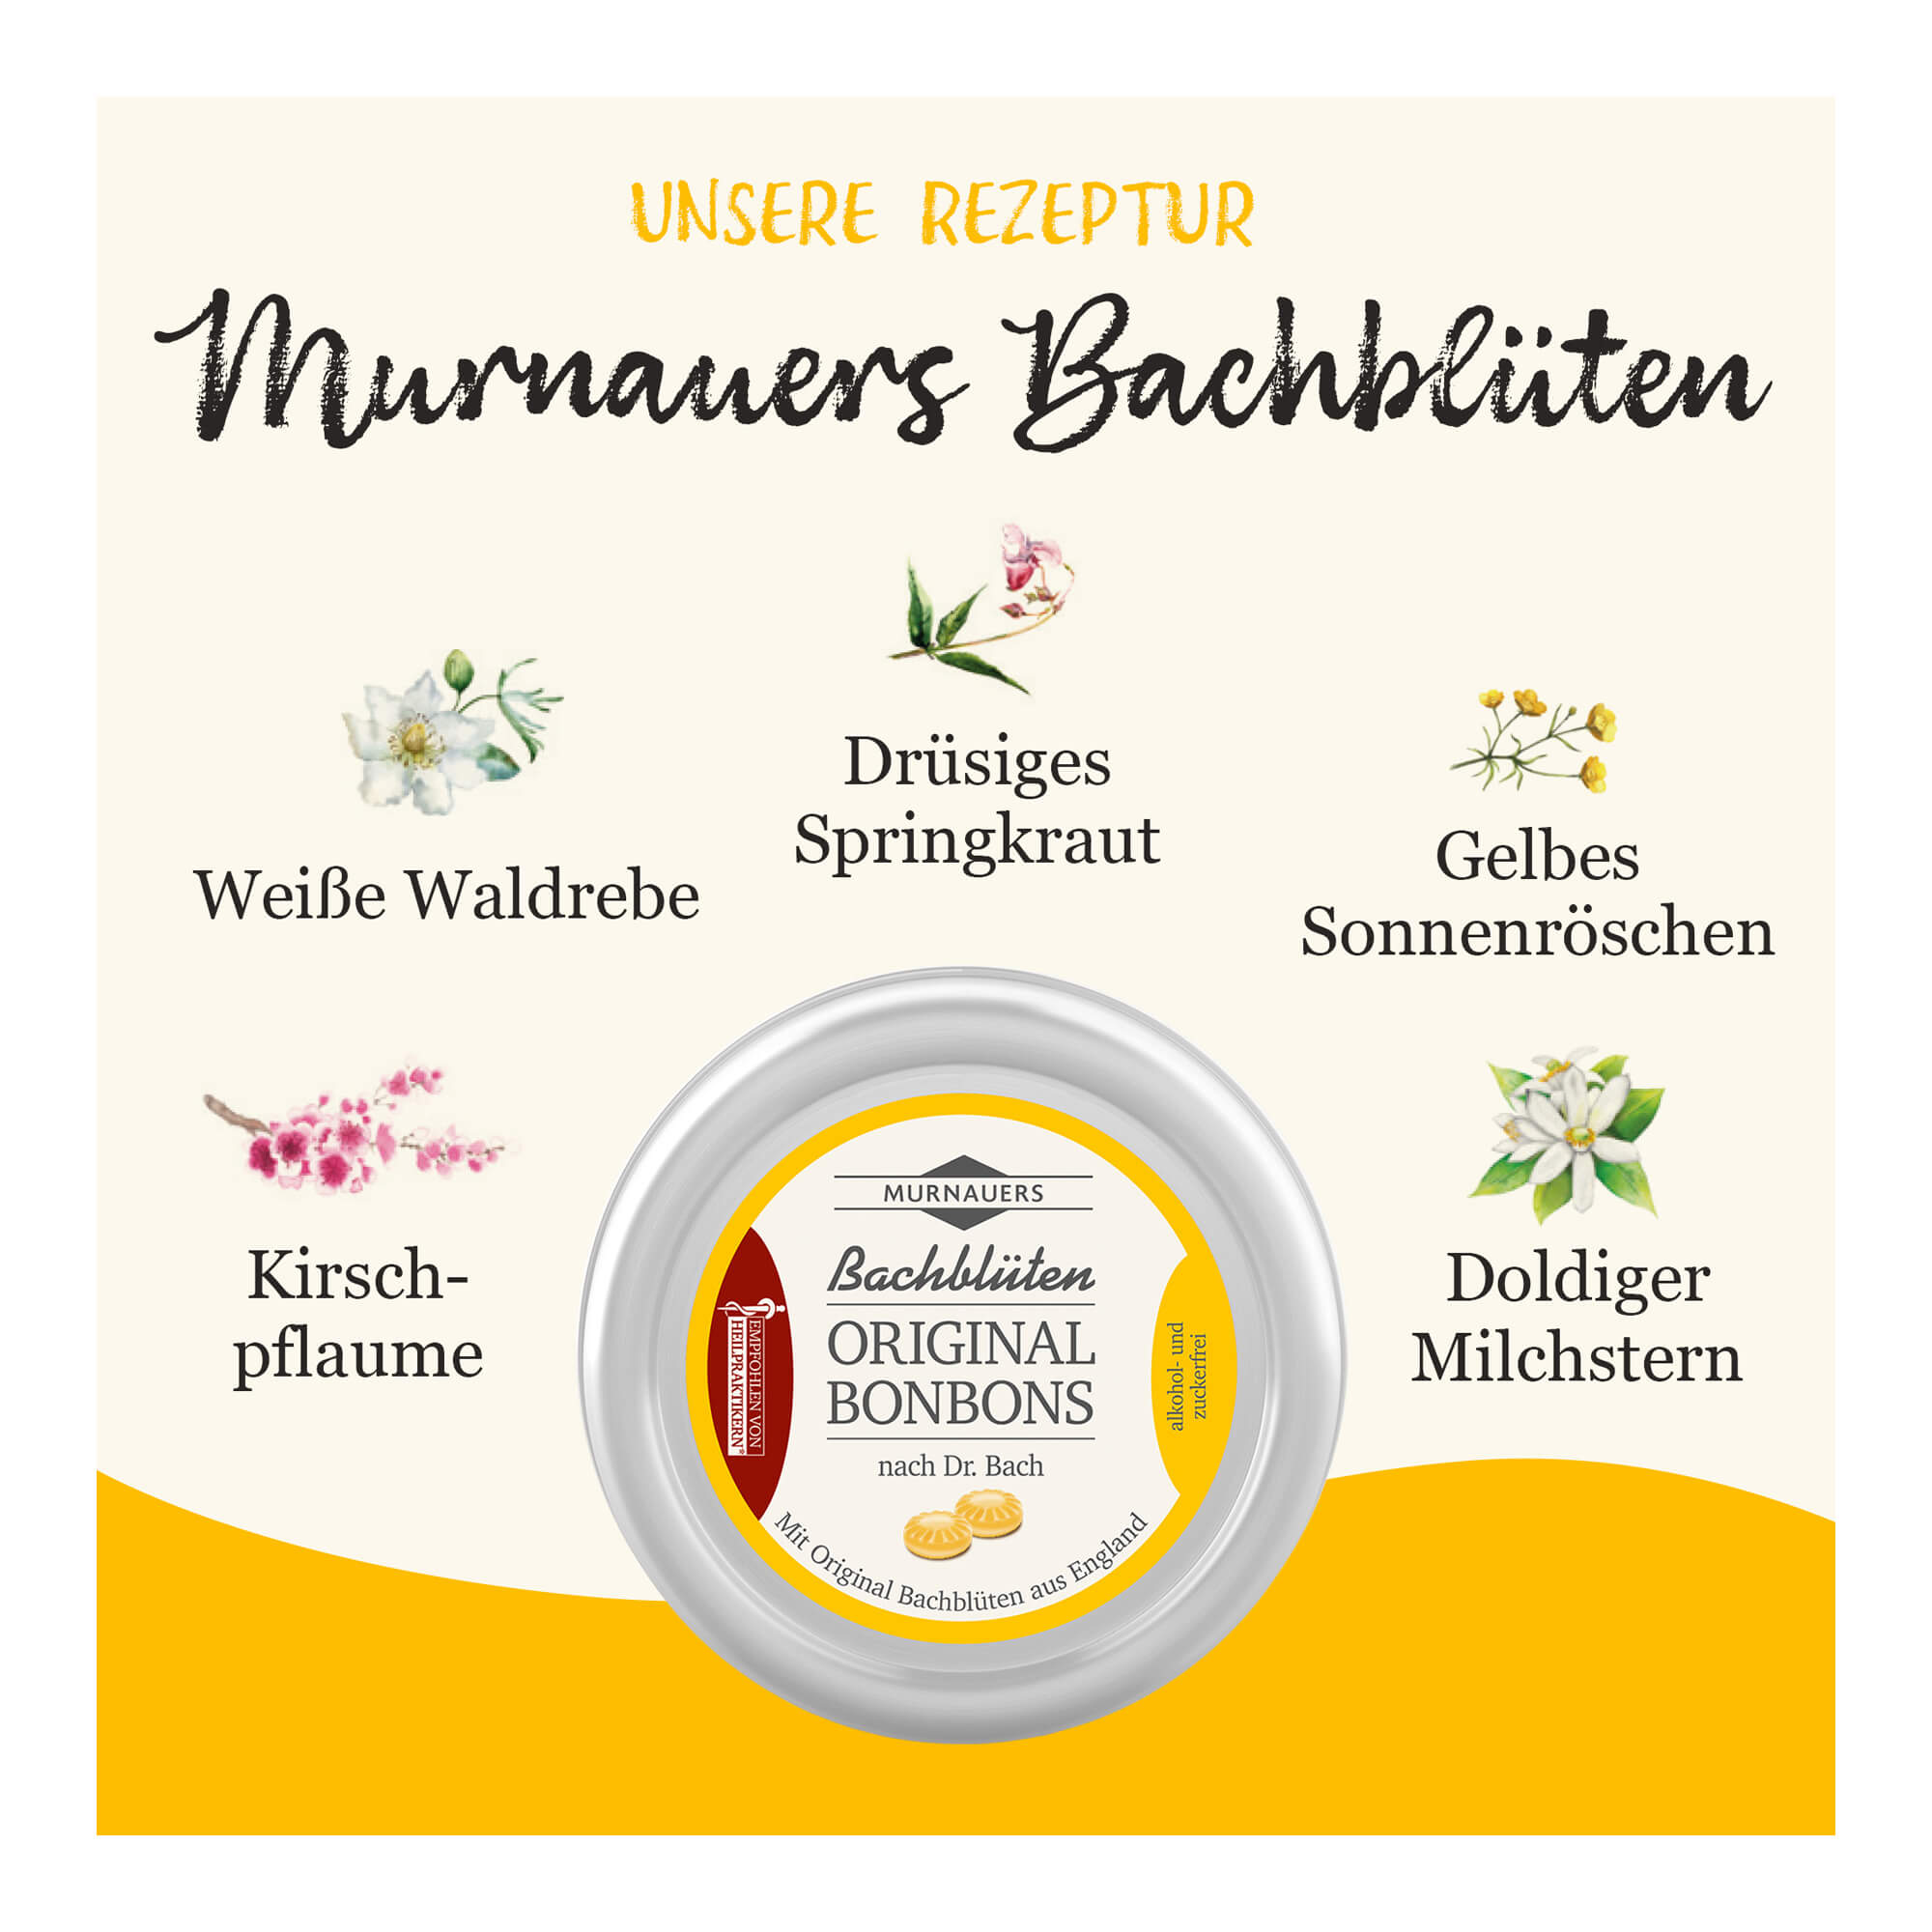 Grafik Murnauer Bachblüten Original Bonbons nach Dr. Bach Rezeptur